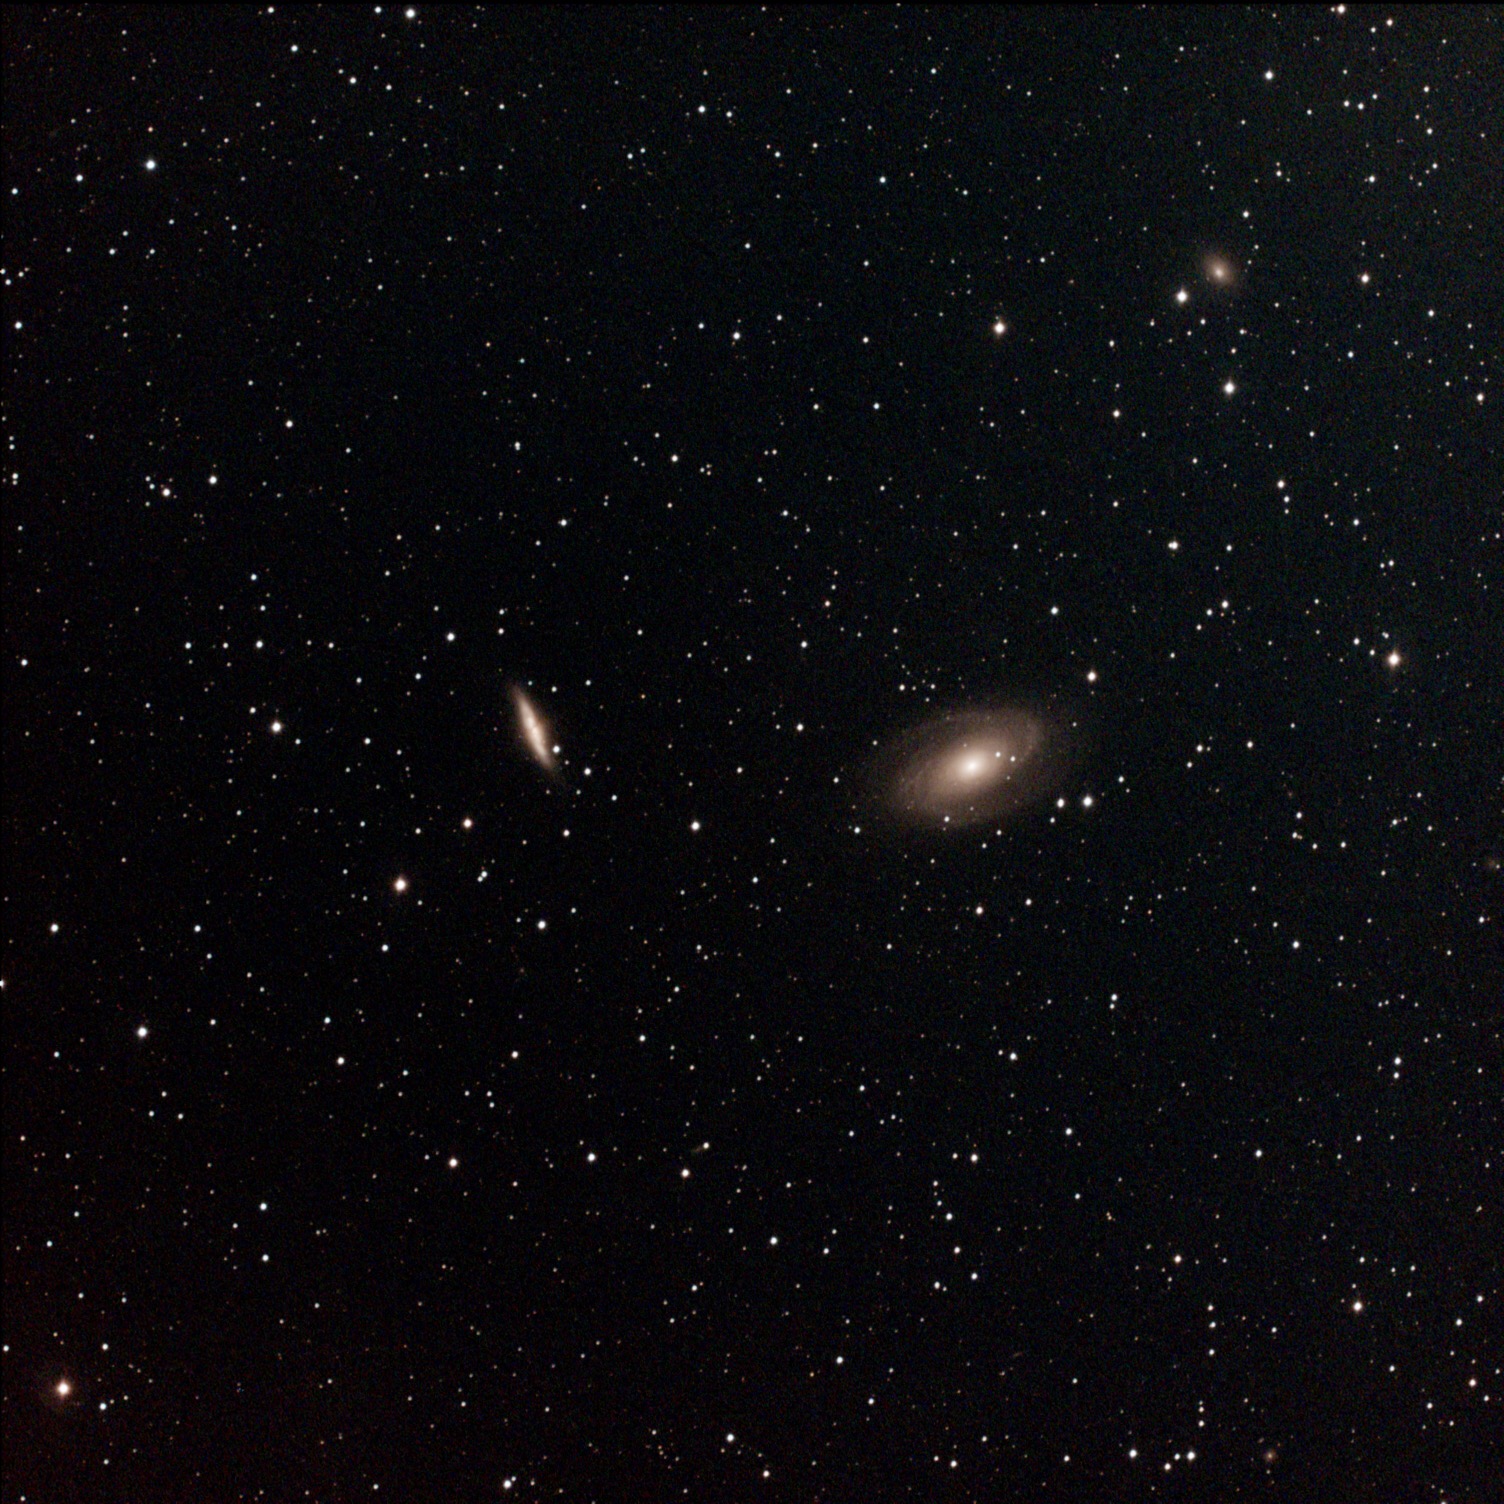 M81, M82, and NGC 3077